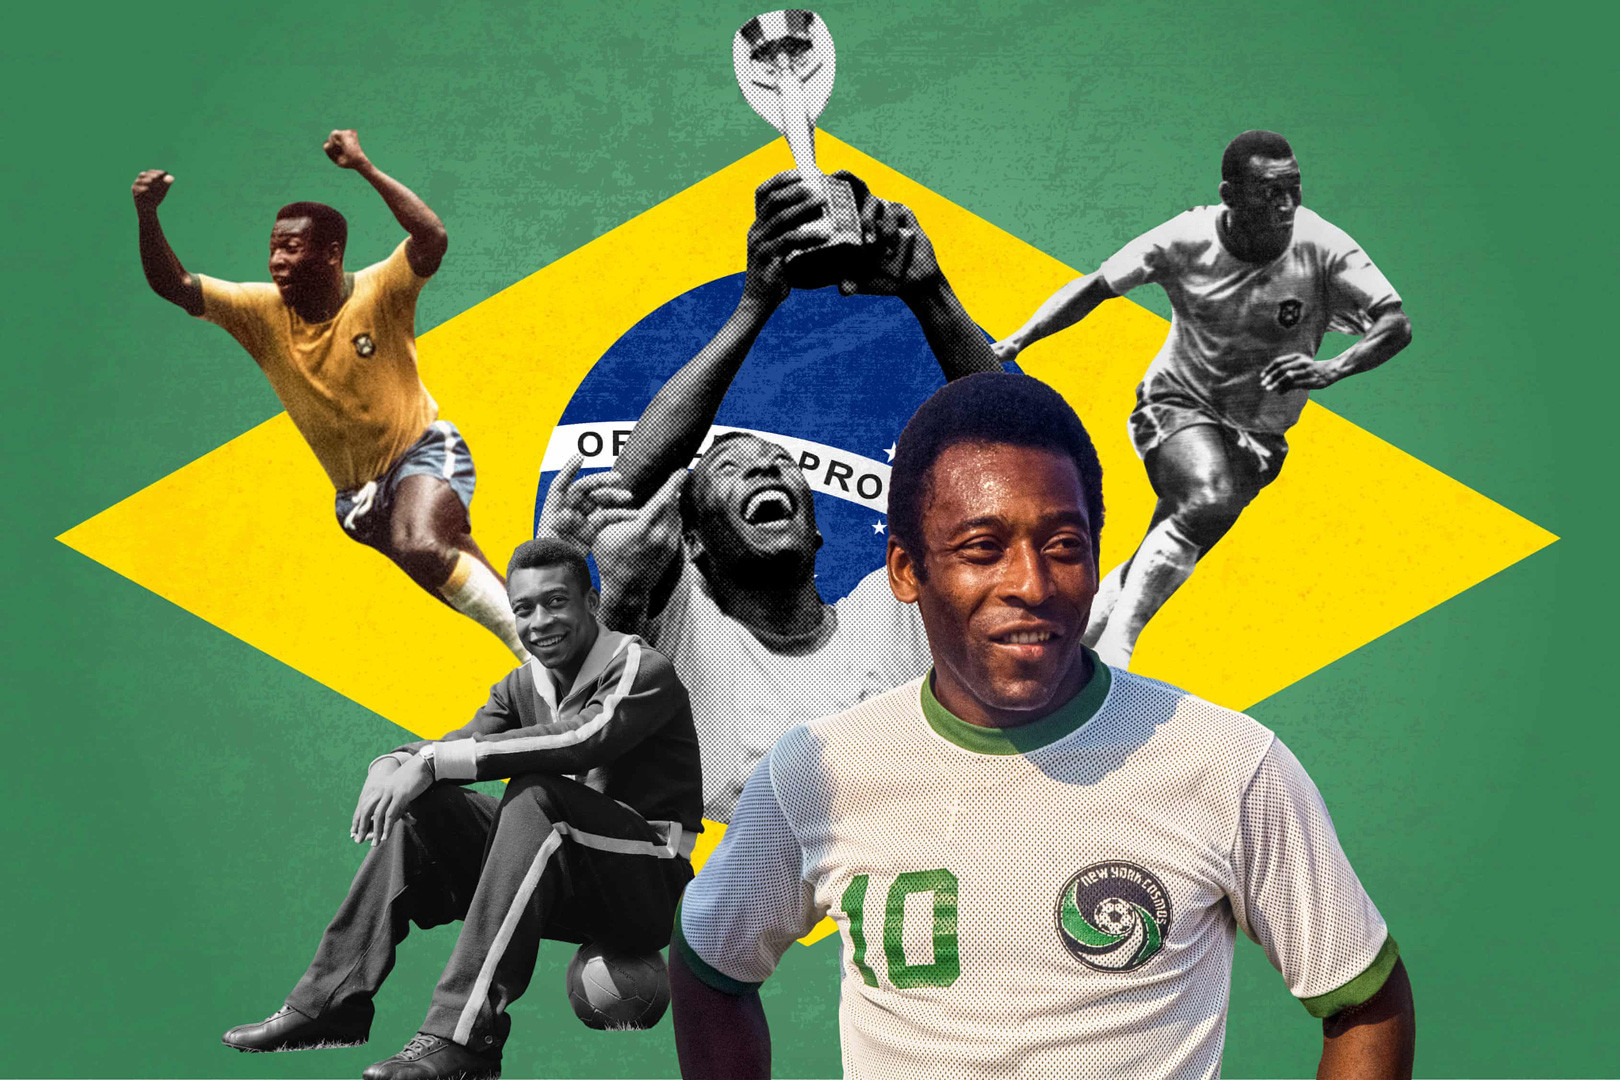 Vua bóng đá Pele: Suýt giải nghệ tuổi 25 để tìm tình yêu